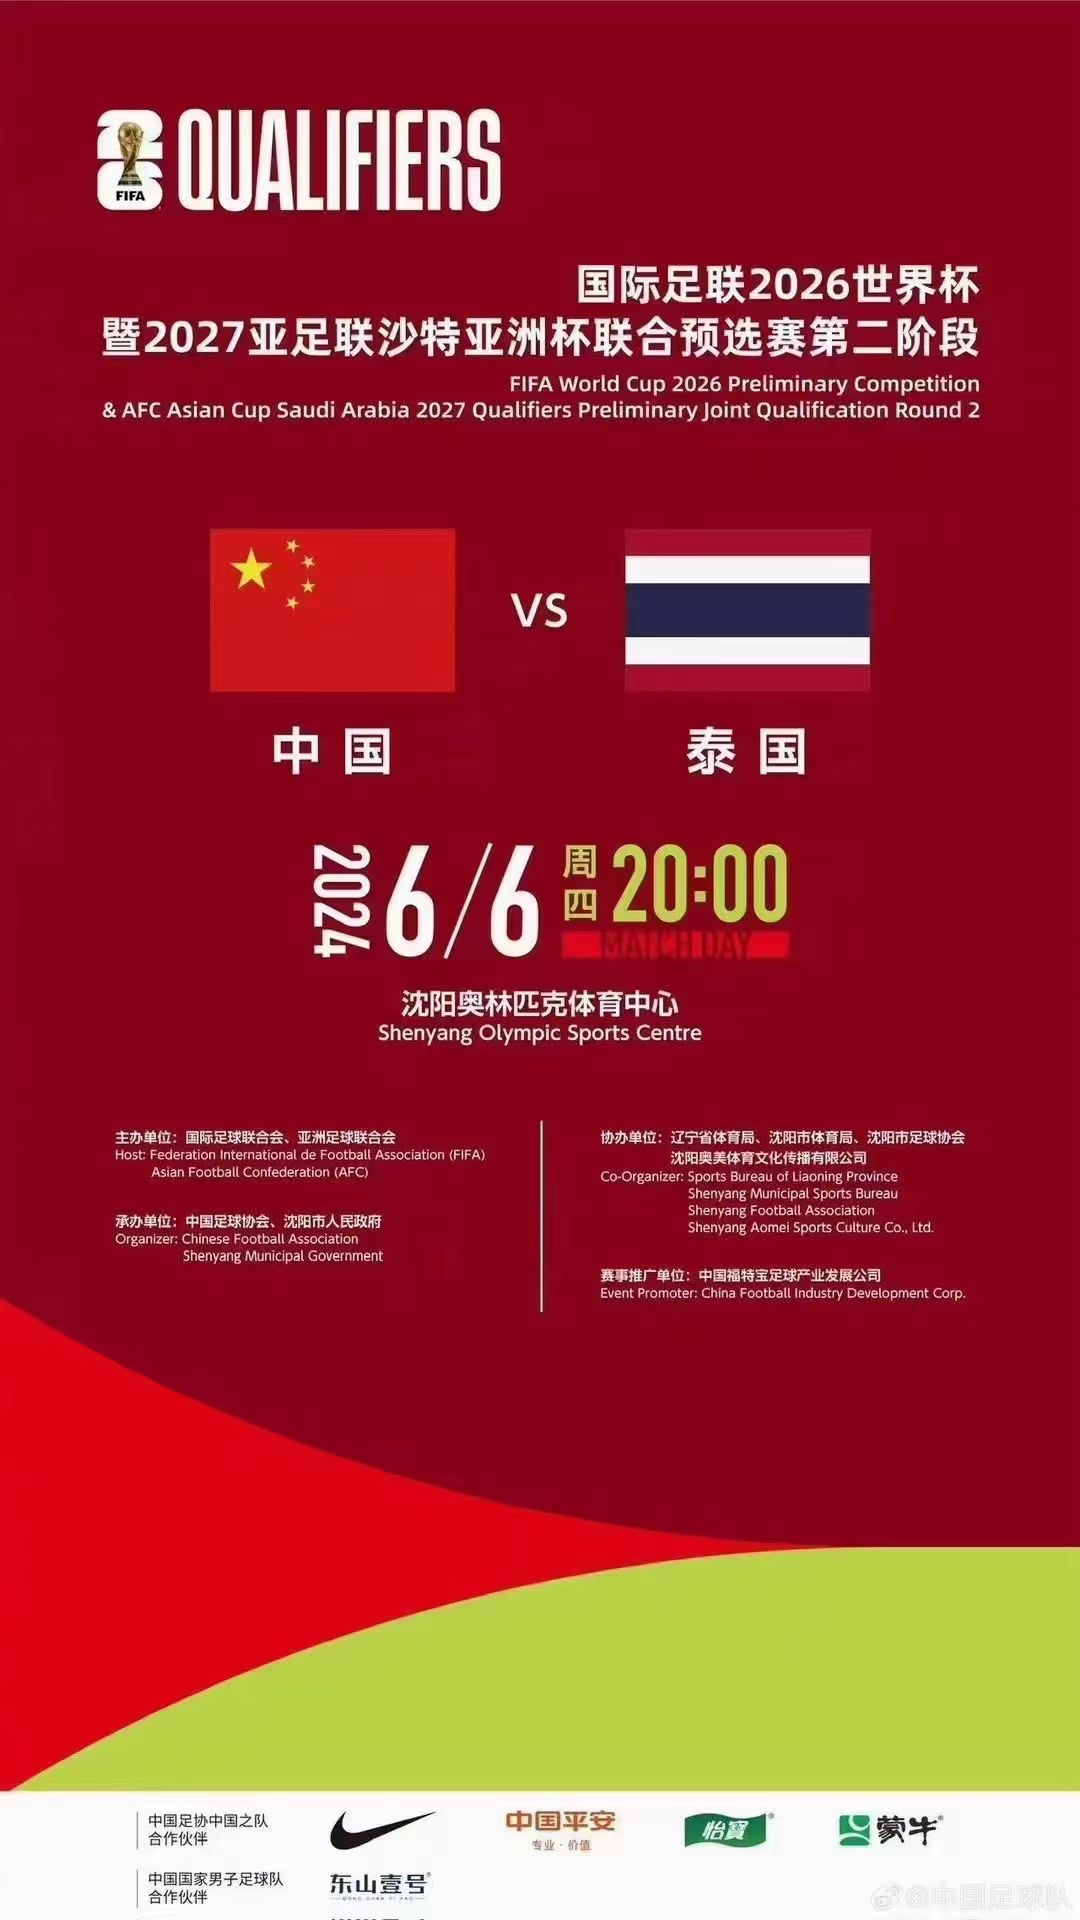 2026世界杯足球赛亚洲区预选赛 男足世预赛中国队比赛 中国vs泰国